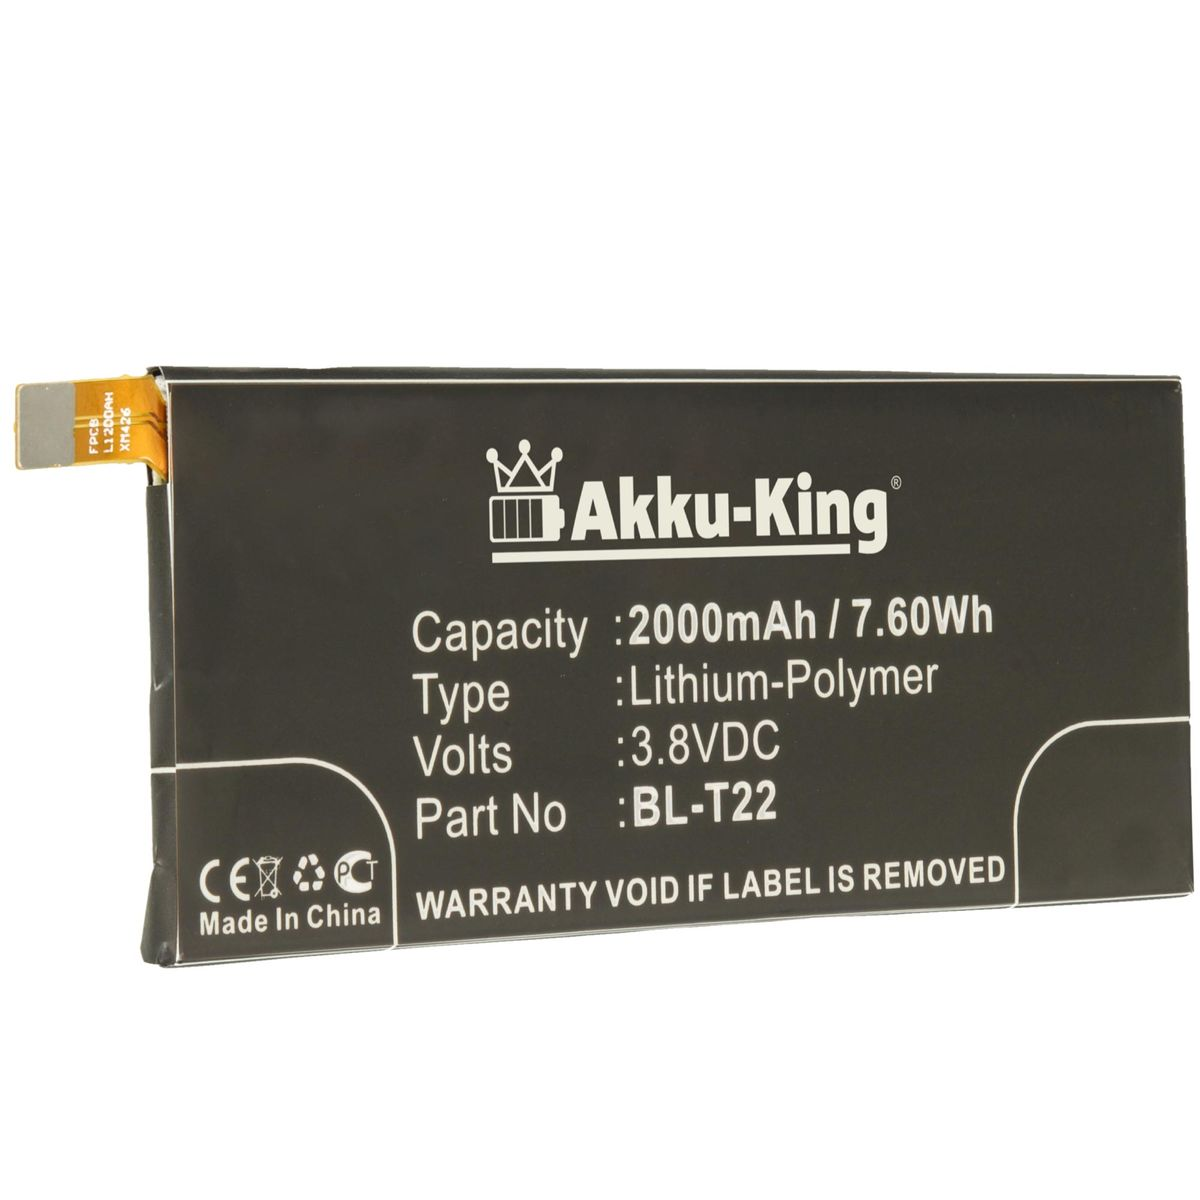 AKKU-KING Akku BL-T22 2000mAh mit 3.8 LG kompatibel Handy-Akku, Li-Polymer Volt